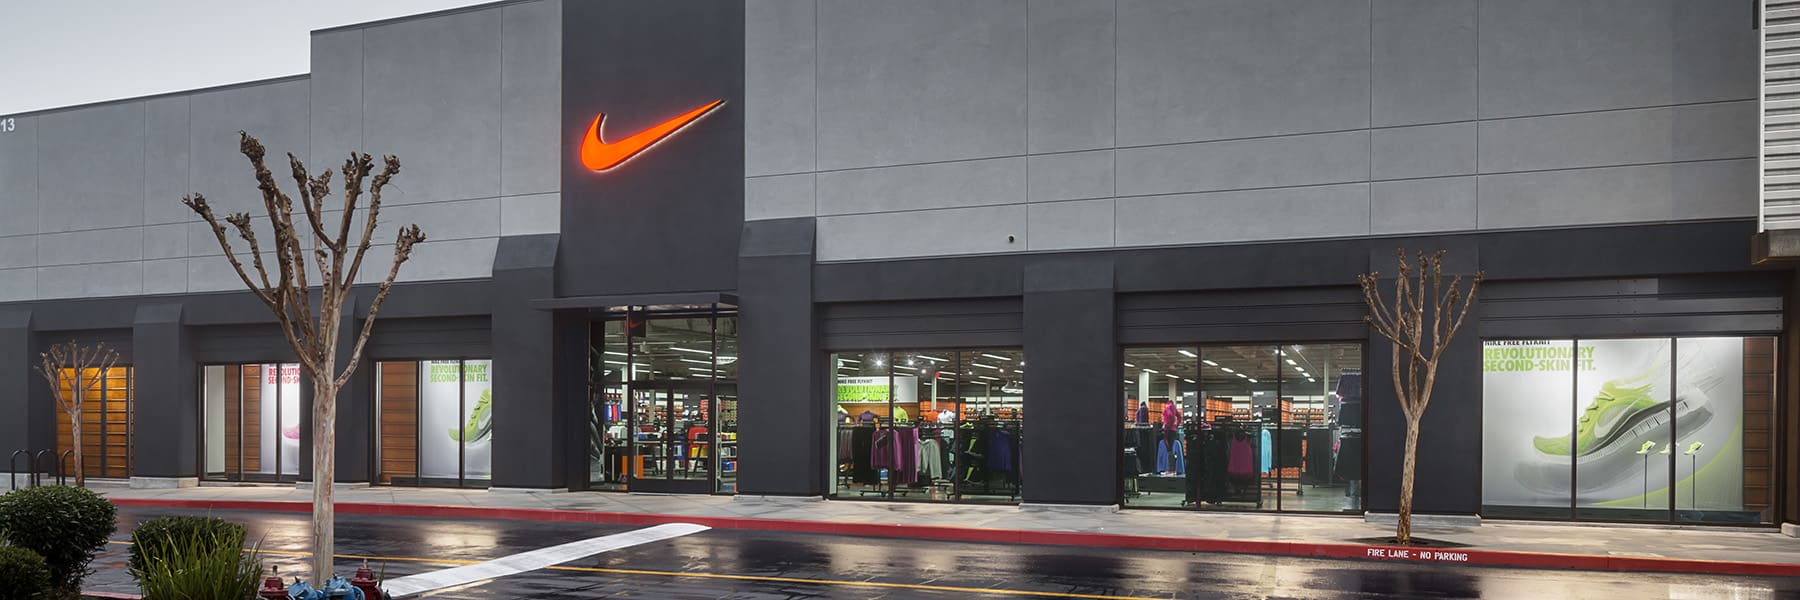 Nike Factory Store - San Jose. San Jose, USA.  ES